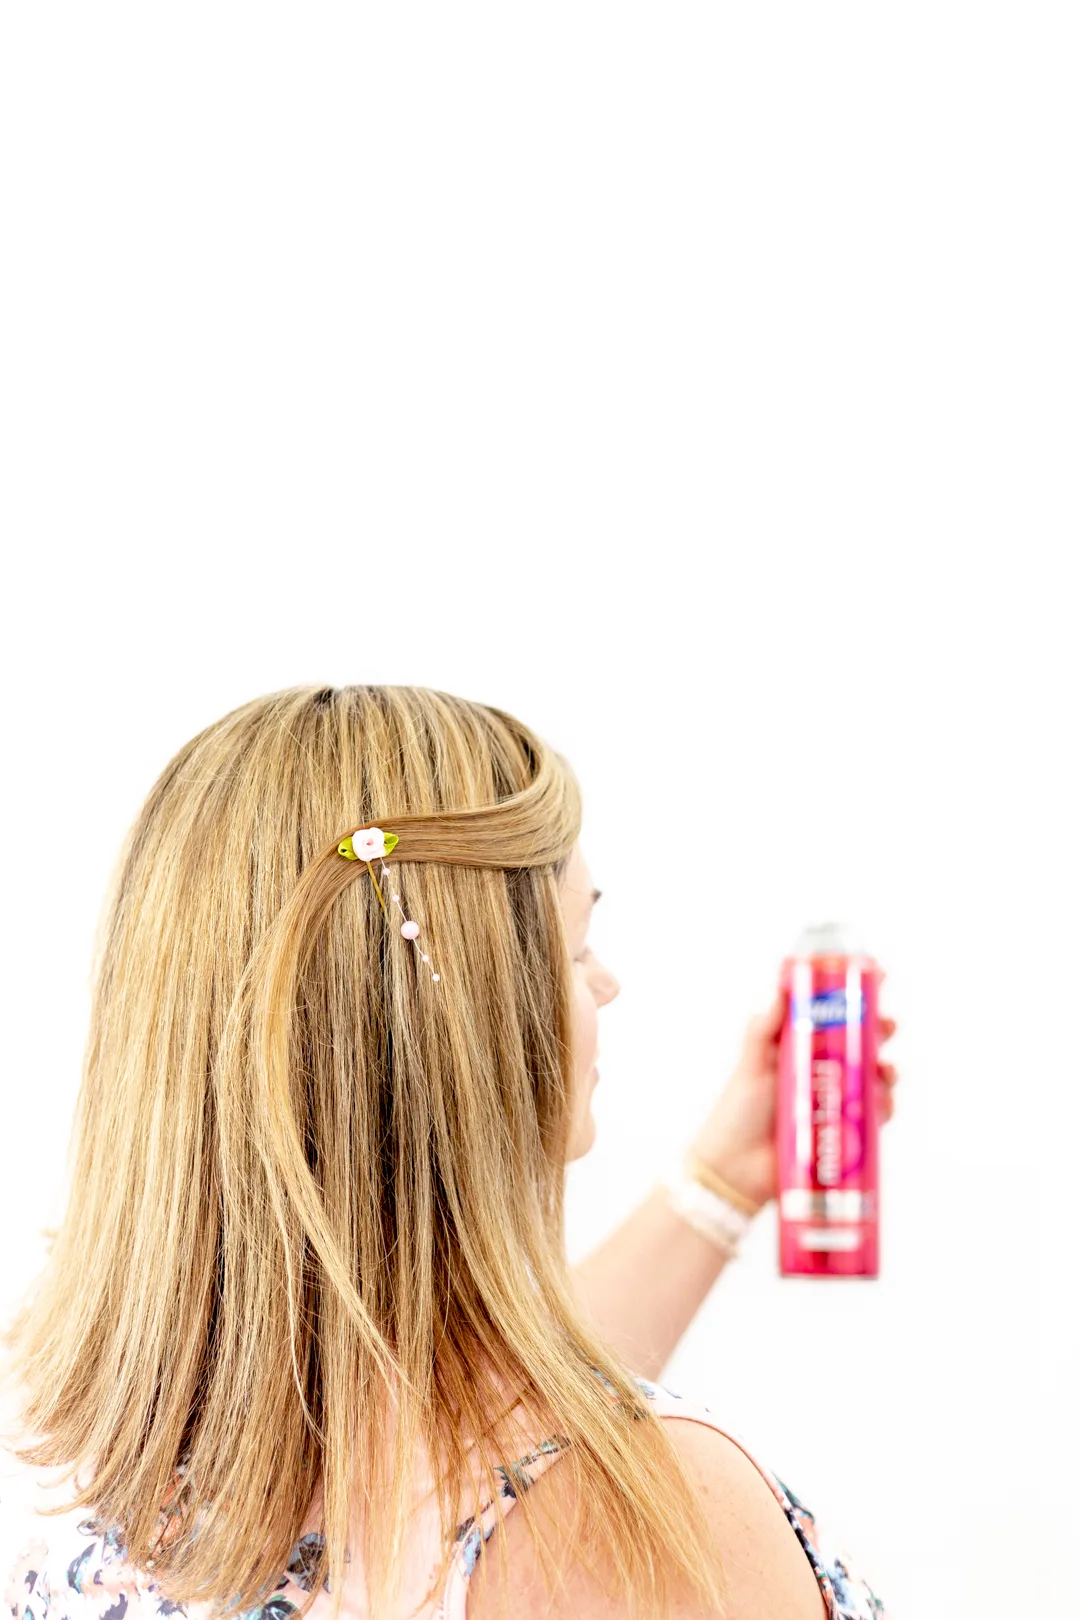 spraying hairspray onto spring hairstyle